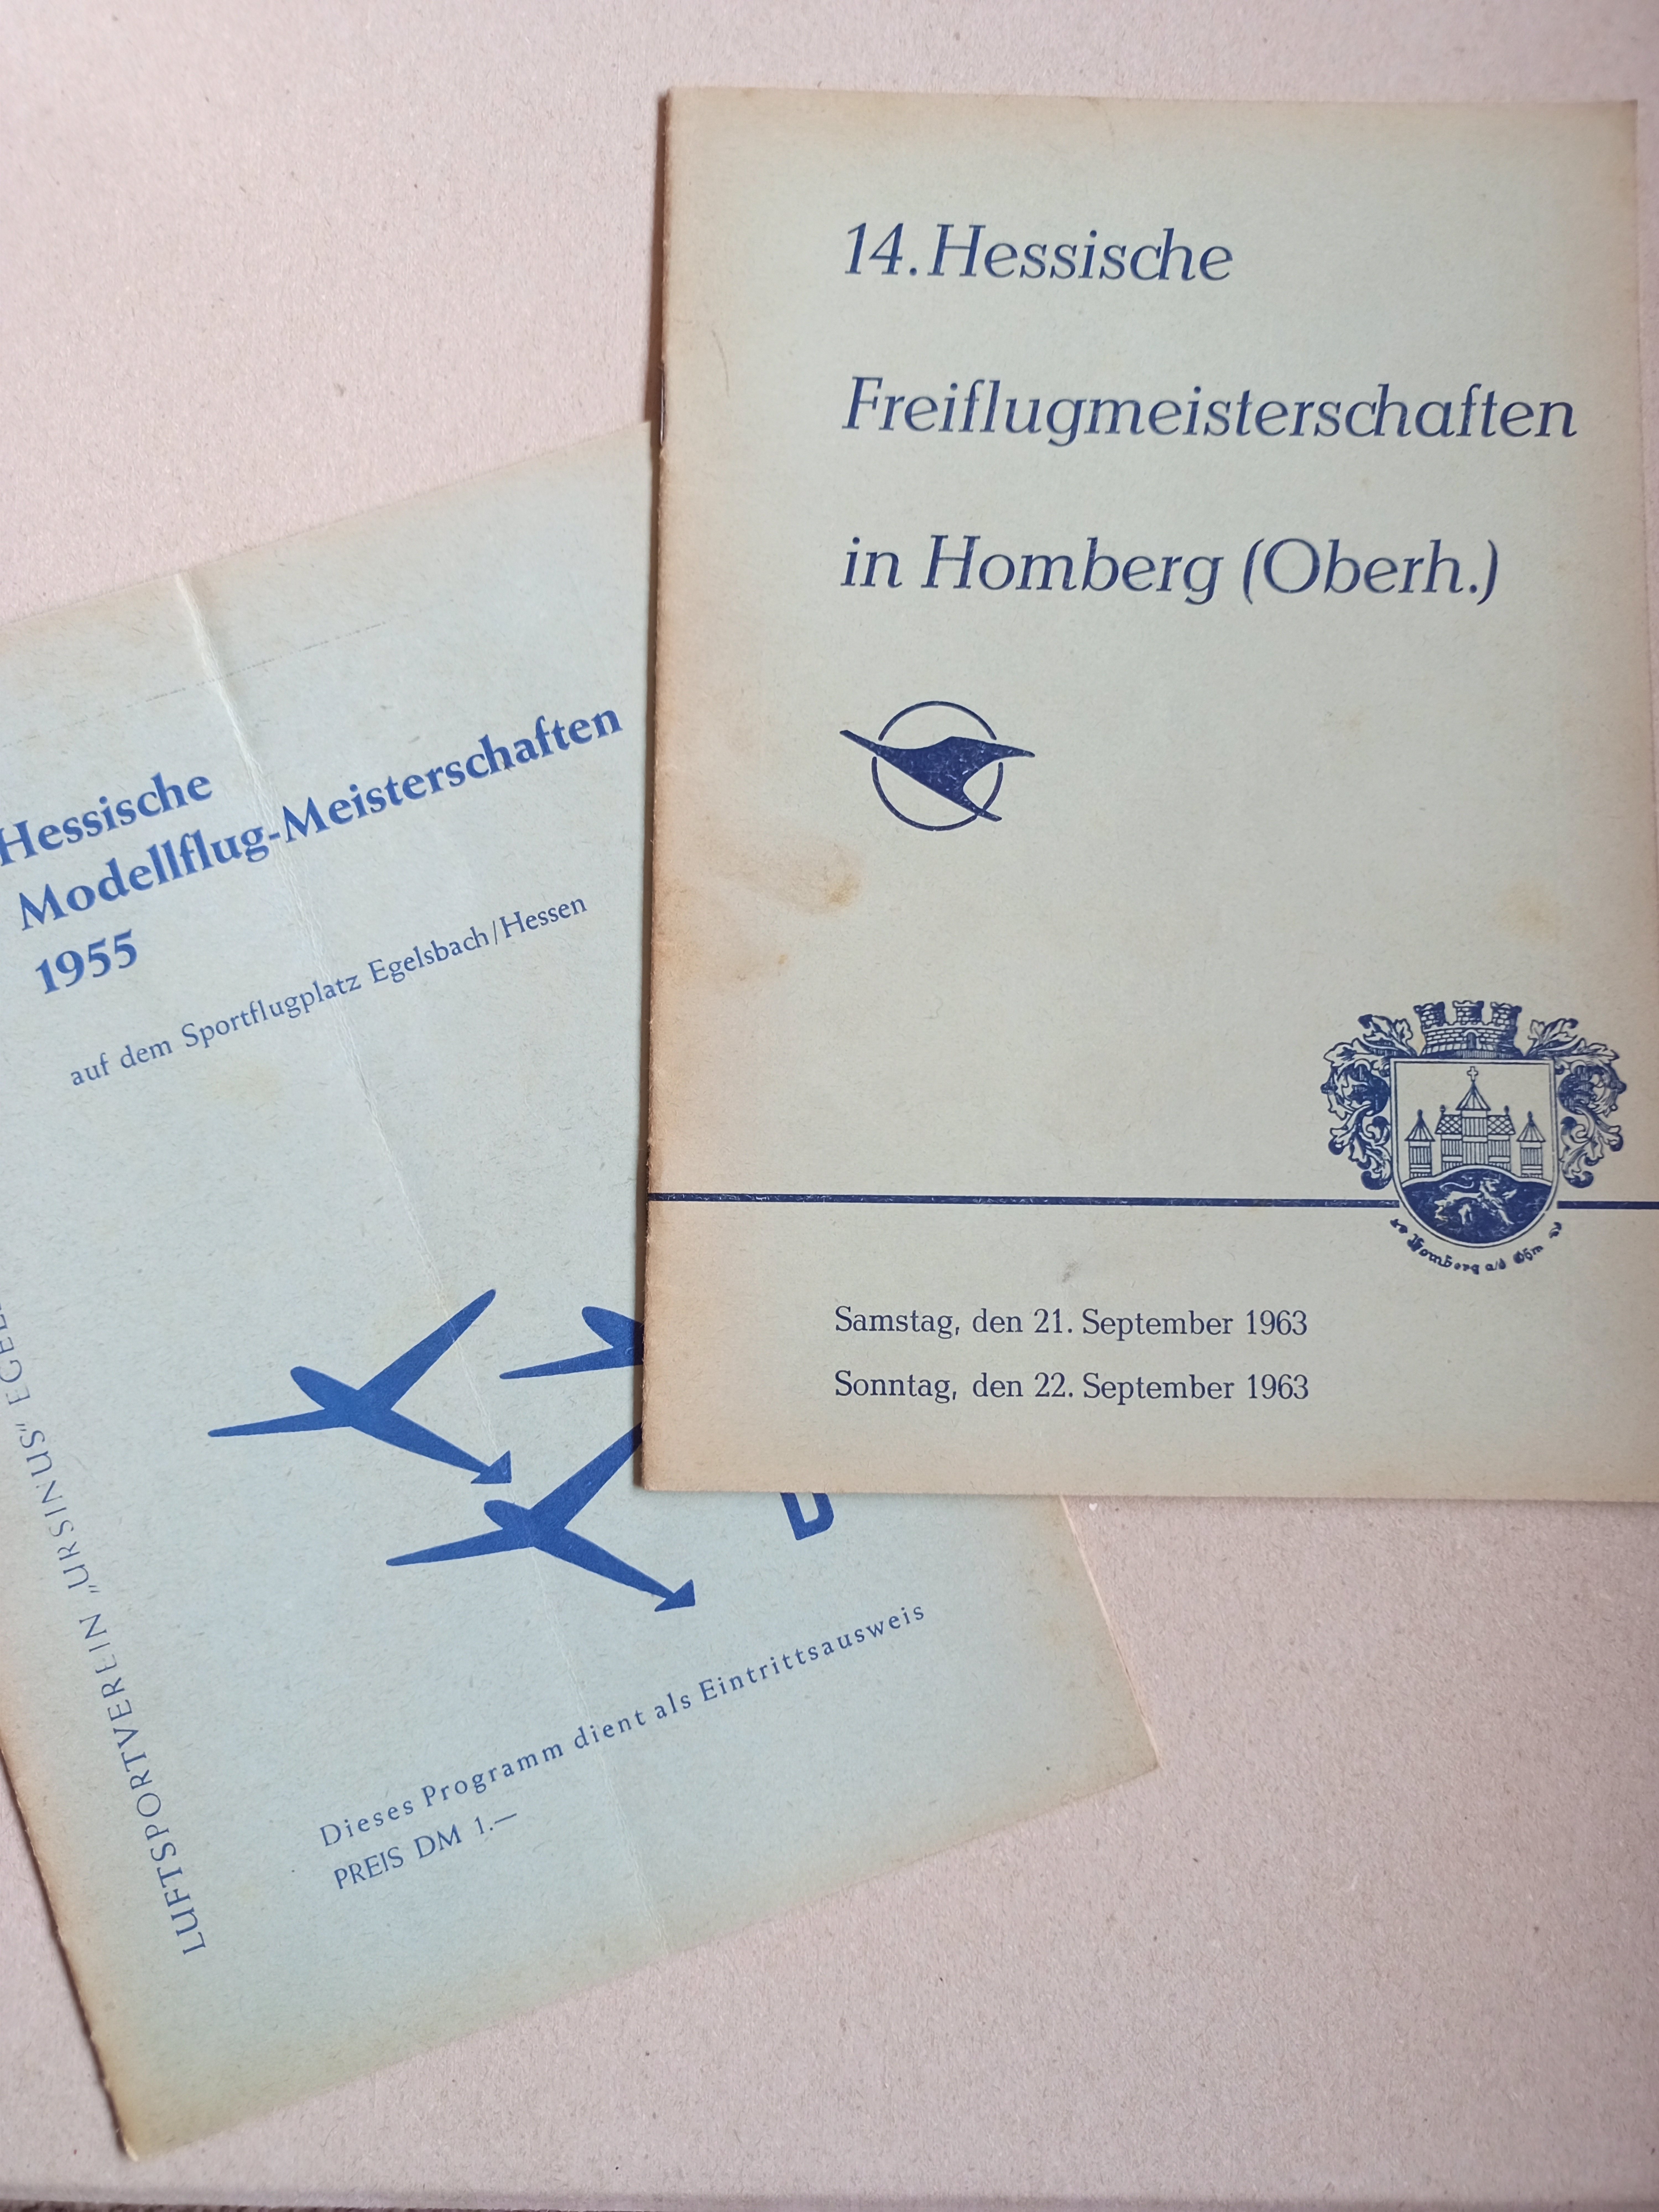 Hessische Modellflugmeiterschaft 1955 + 1963 (Deutsches Segelflugmuseum mit Modellflug CC BY-NC-SA)